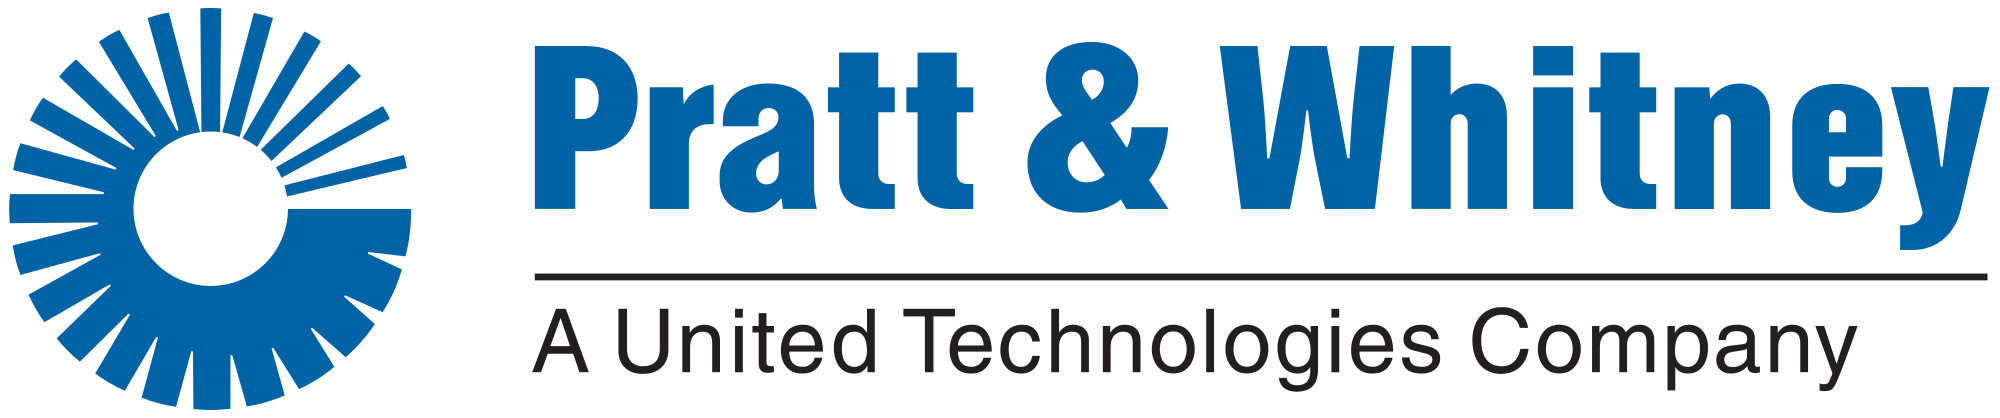 Pratt and Whitney Old Logo - Pratt & Whitney UTC logo.svg